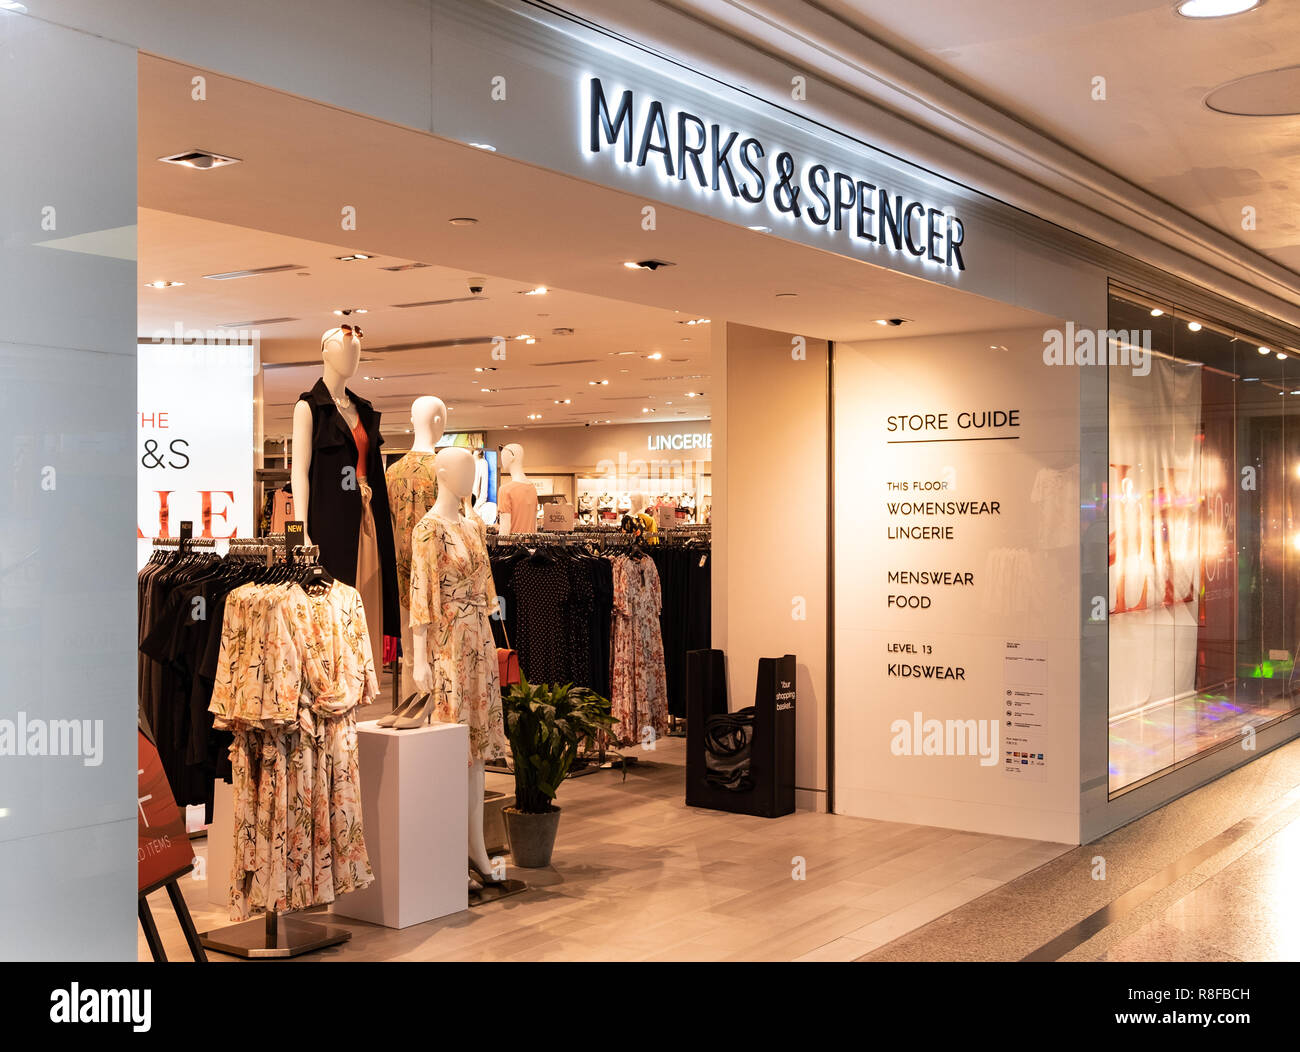 Hong Kong, April 7, 2019: Marks & Spencer store in Hong Kong. Stock Photo